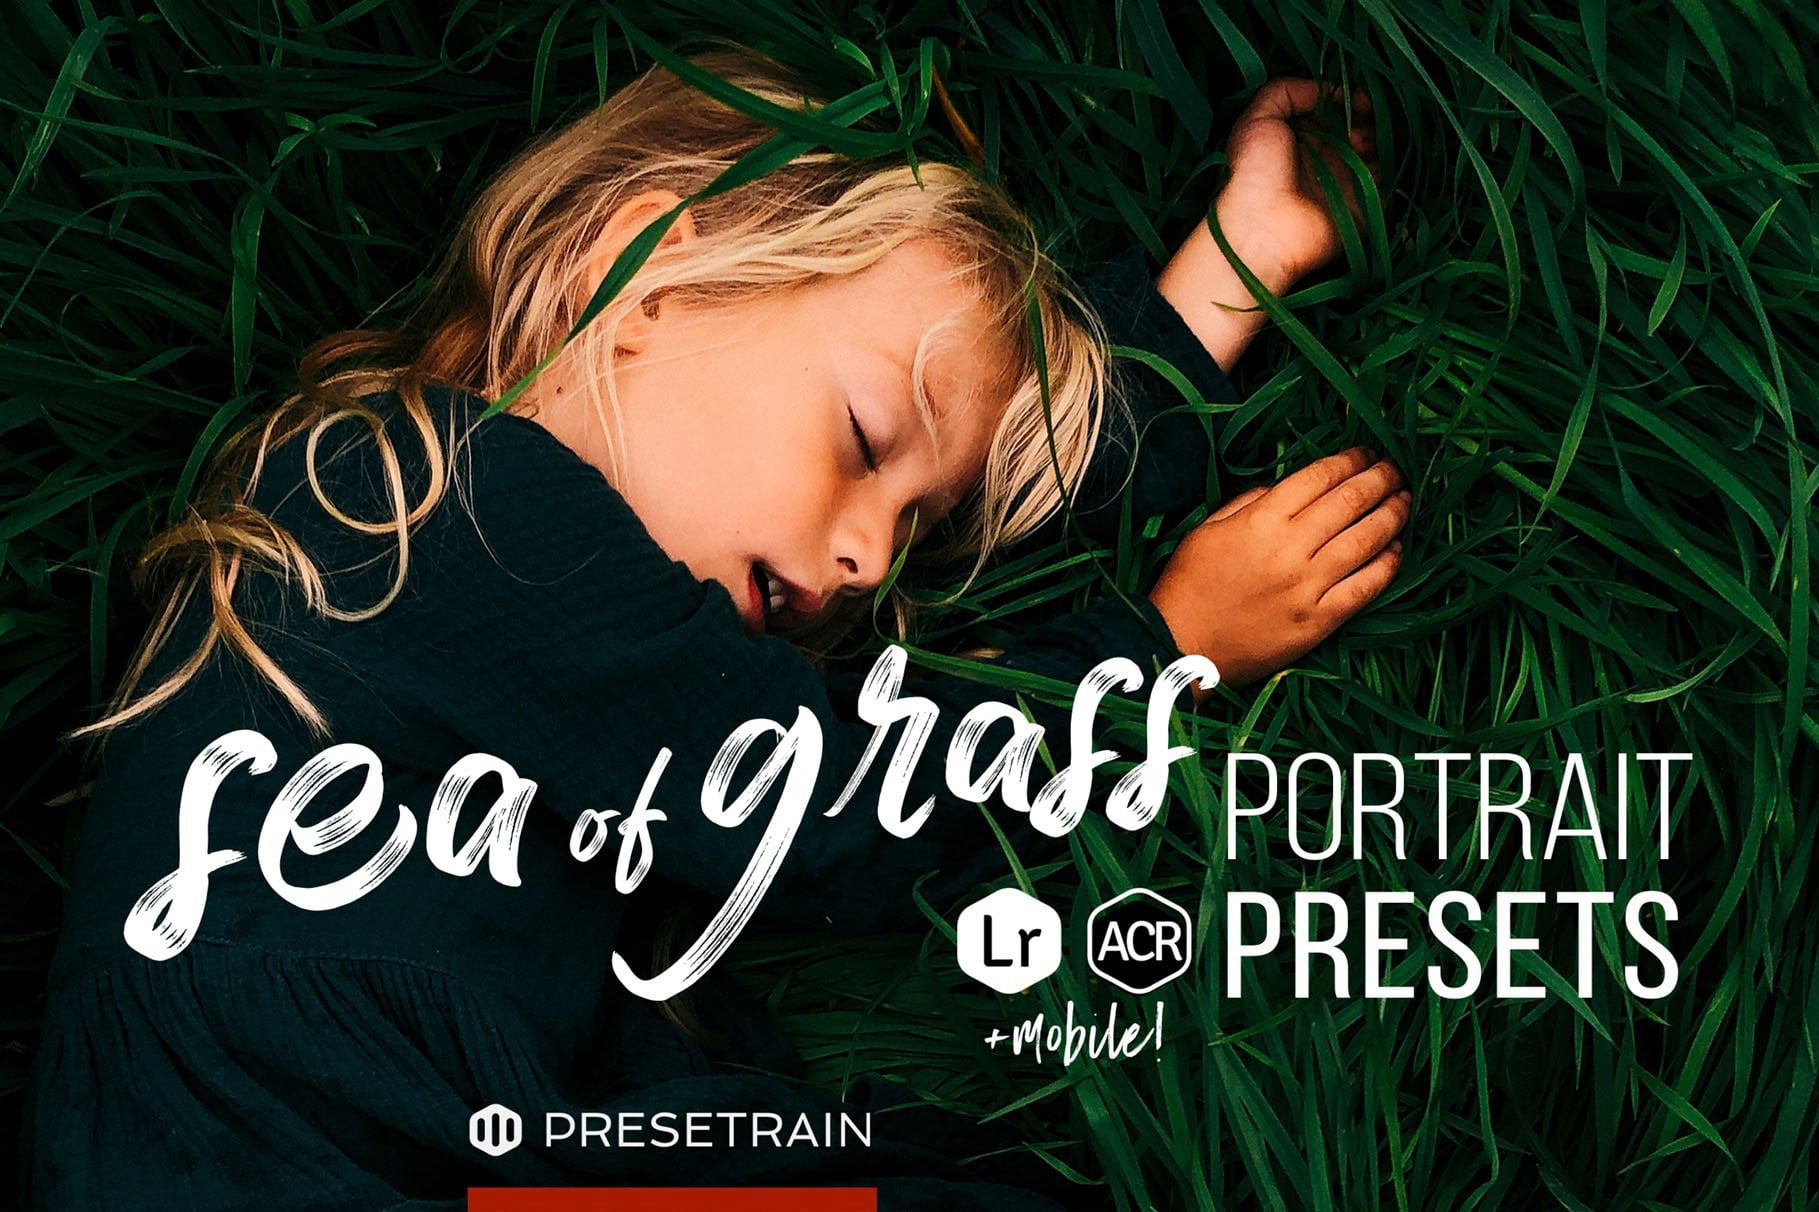 Sea of Grass Portrait Presets